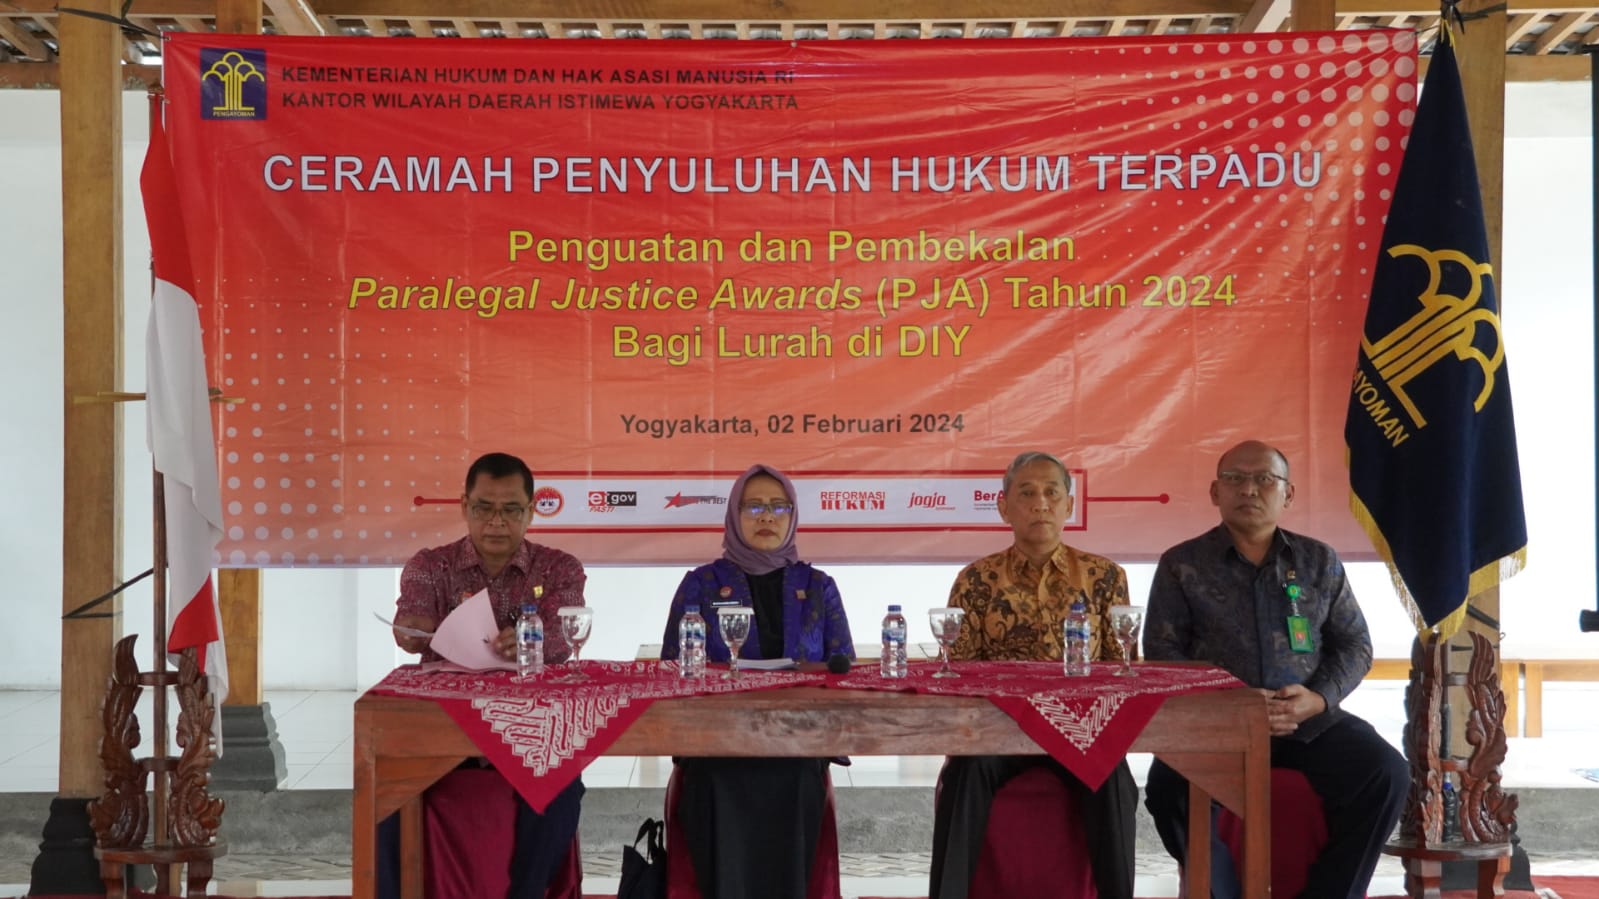 Hakim Pengadilan Negeri Yogyakarta Menghadiri Penyuluhan Hukum tentang Penguatan dan Pembekalan PJA Tahun 2024 bagi Lurah